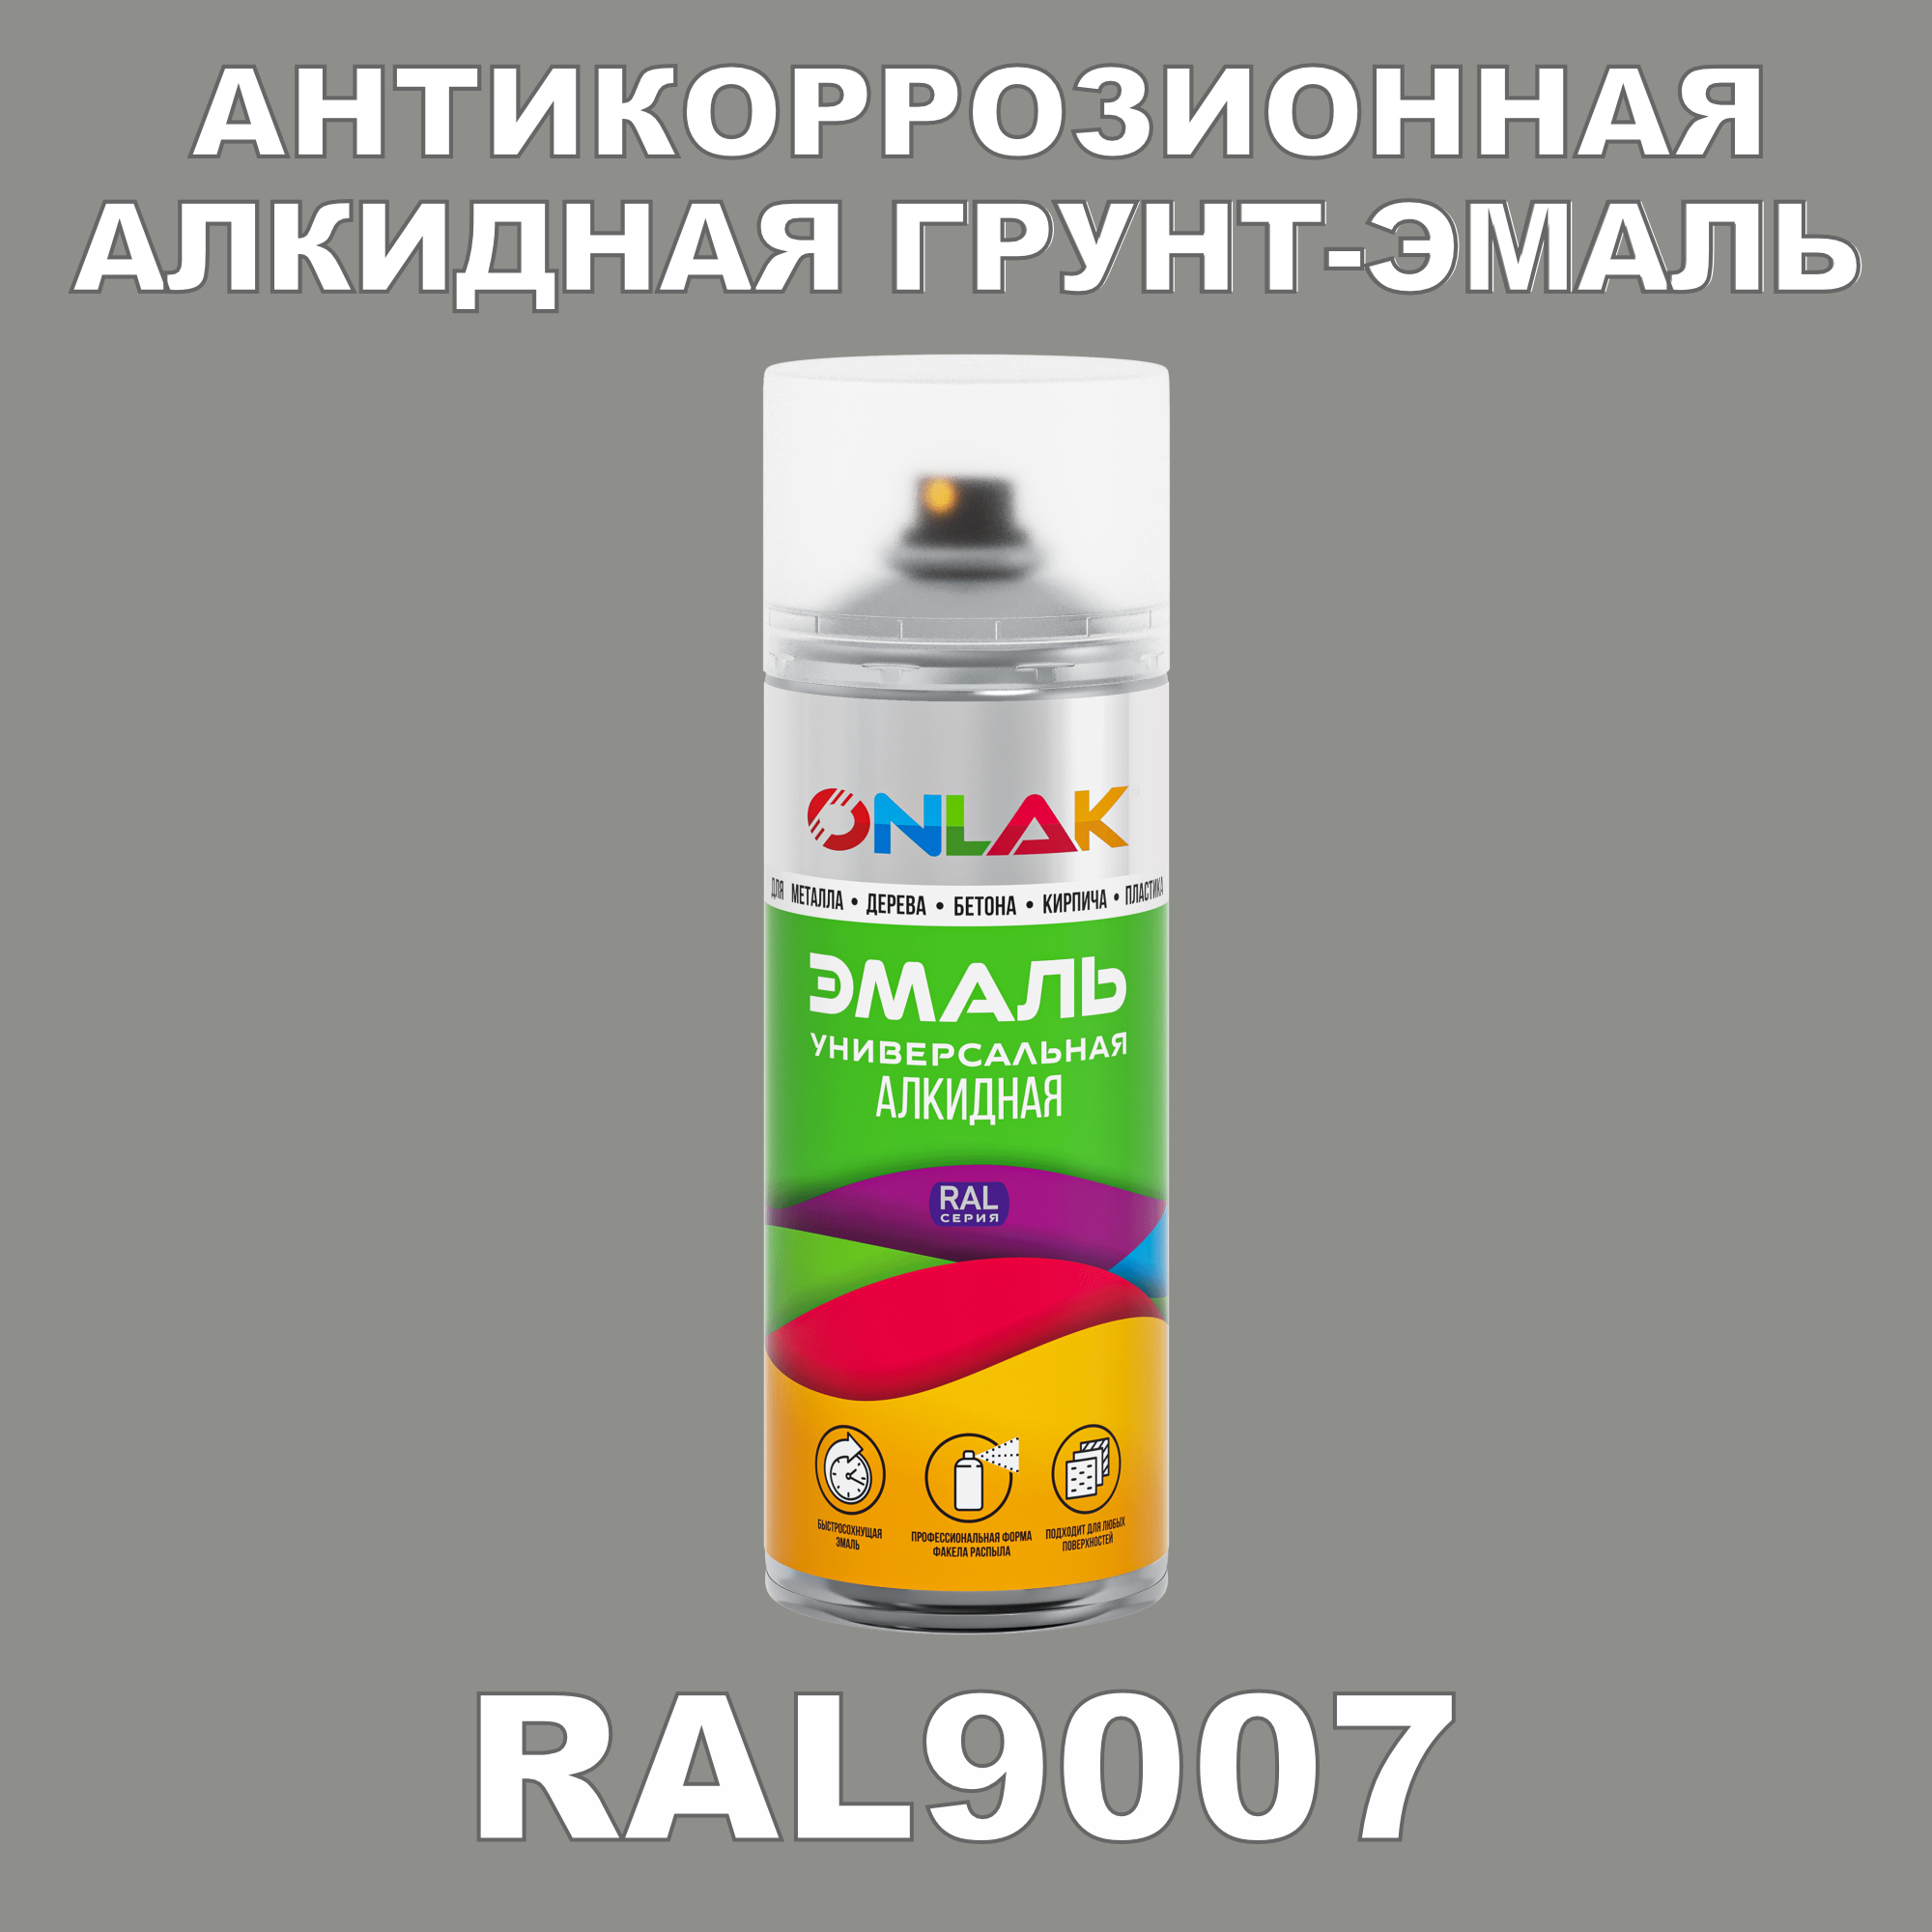 Антикоррозионная грунт-эмаль ONLAK RAL9007 полуматовая для металла и защиты от ржавчины